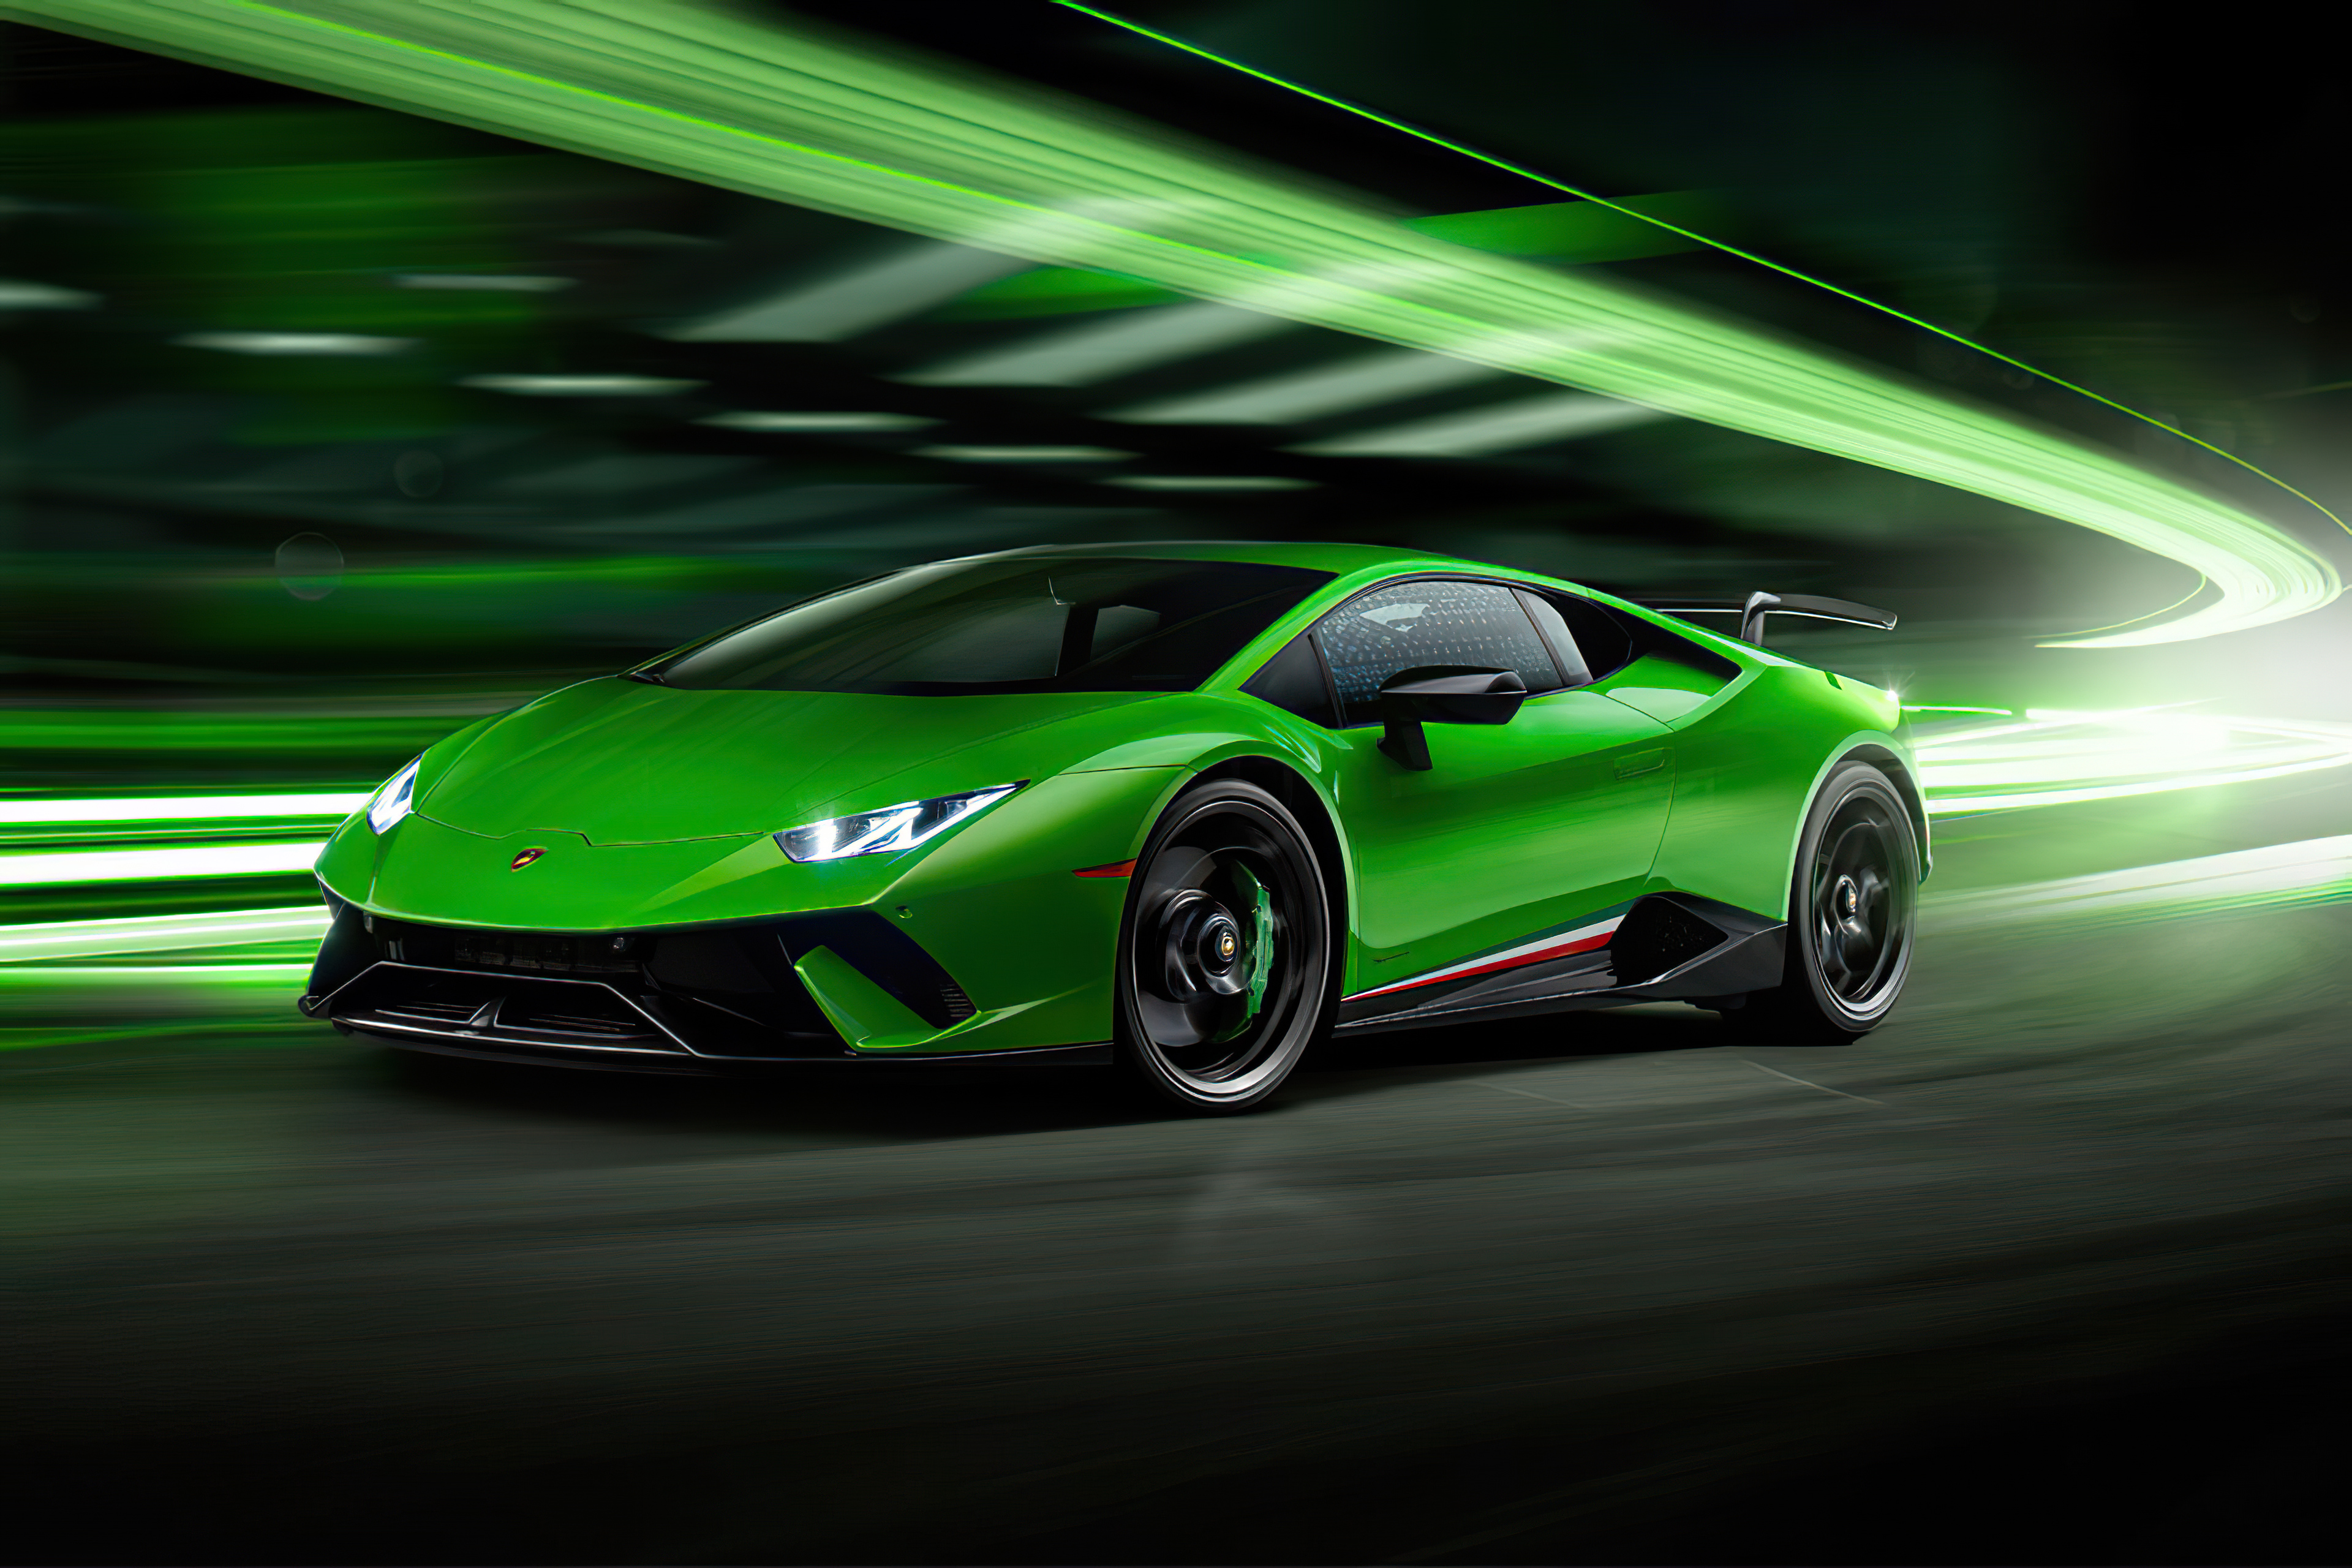 Hãy đắm mình trong vẻ đẹp xanh ngọc nhưng cực kỳ đầy quyến rũ của Lamborghini Huracan Performante. Với tốc độ tối đa lên đến 325 km/h và động cơ V10 5.2L sản sinh 631 mã lực, chiếc xe này chắc chắn sẽ làm bạn ngất ngây.